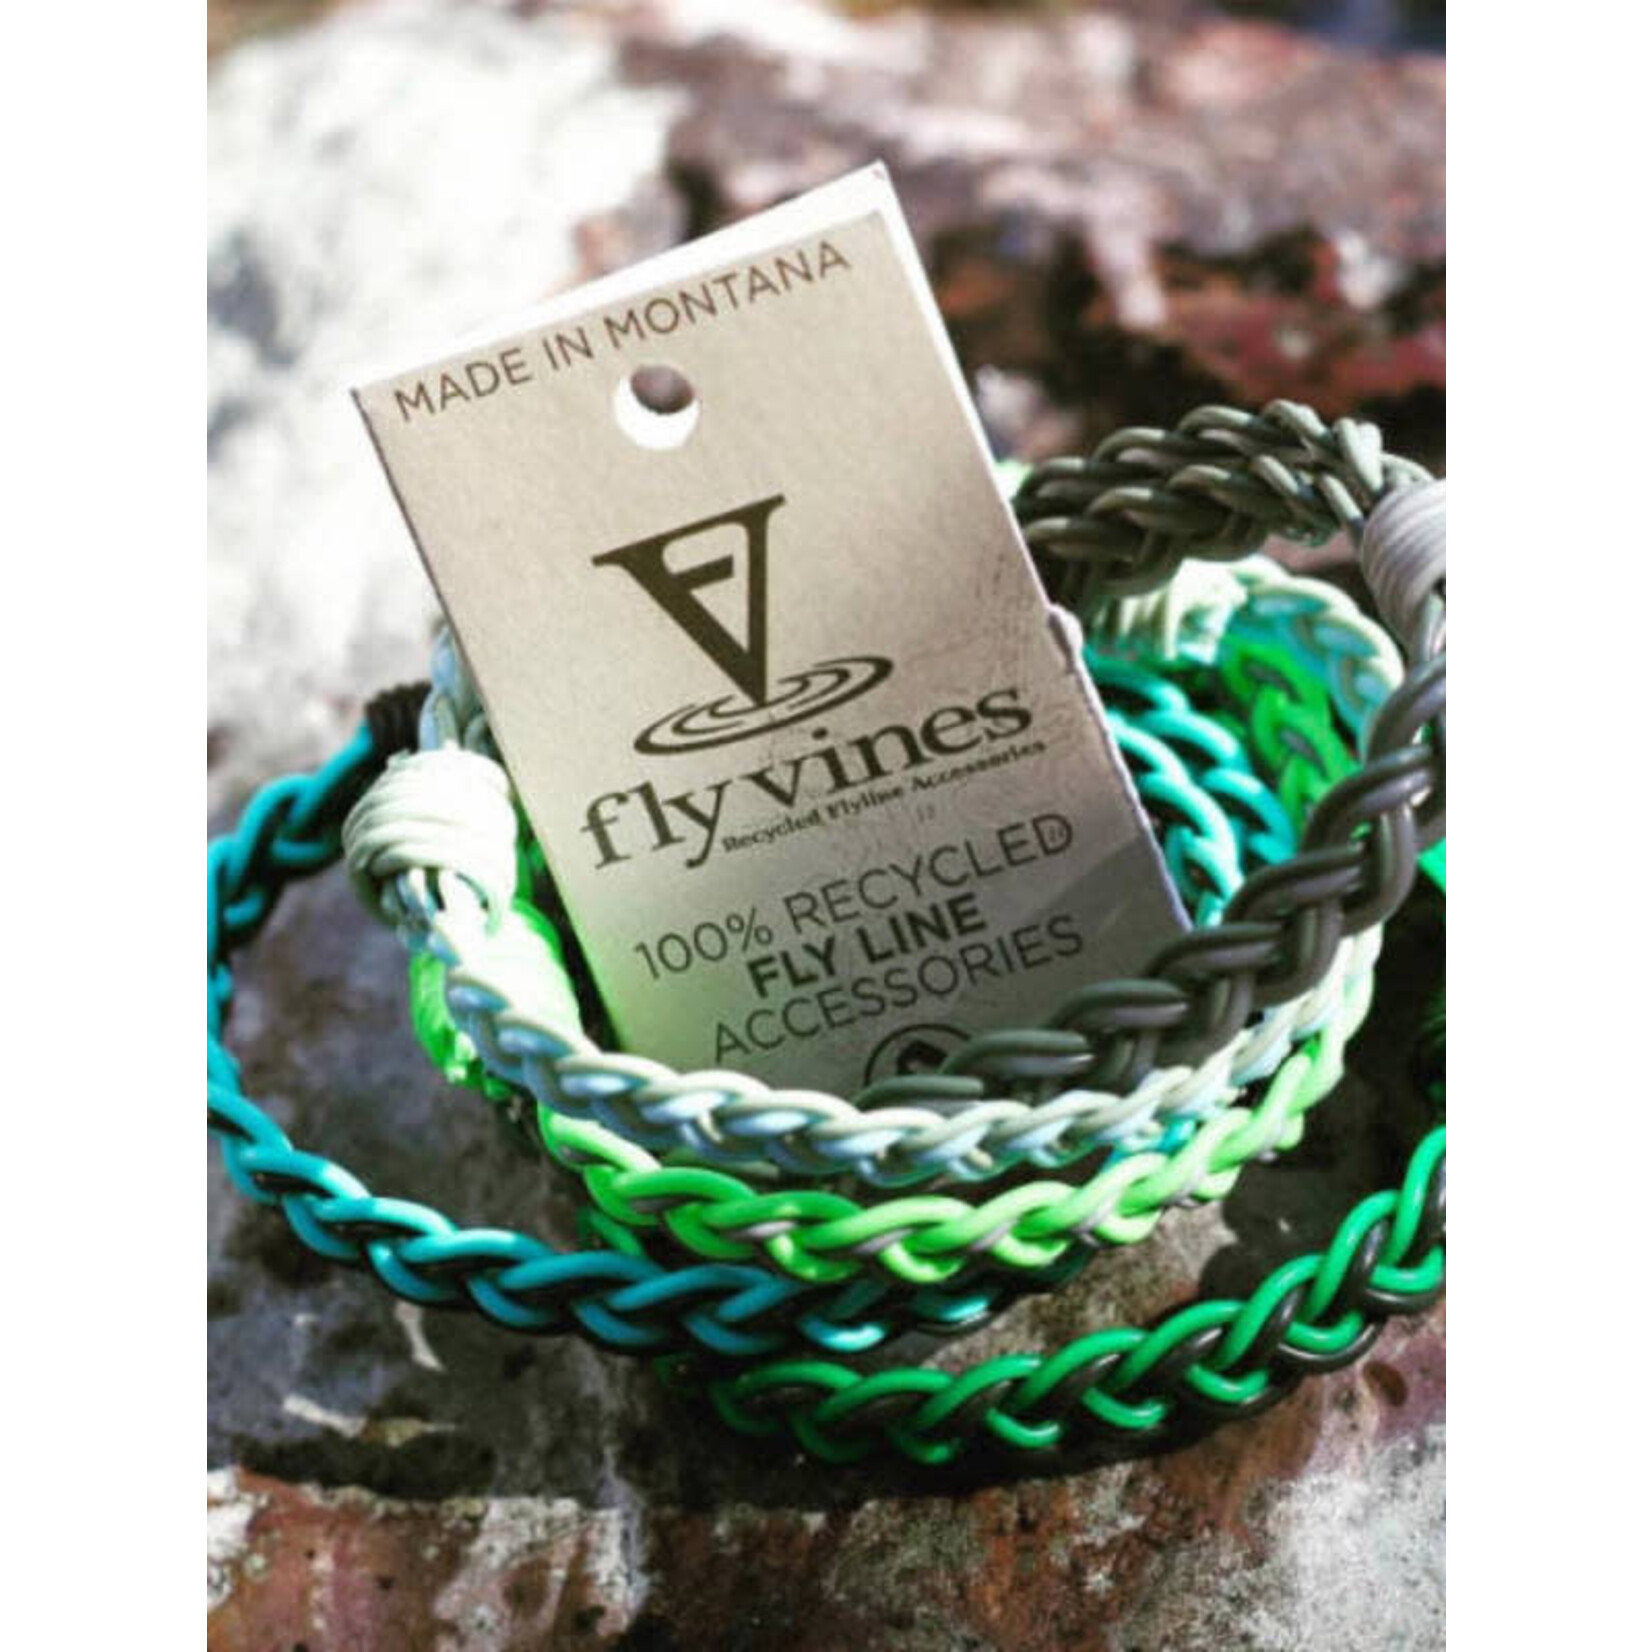 Flyvines Recycled Fly Line Bracelets